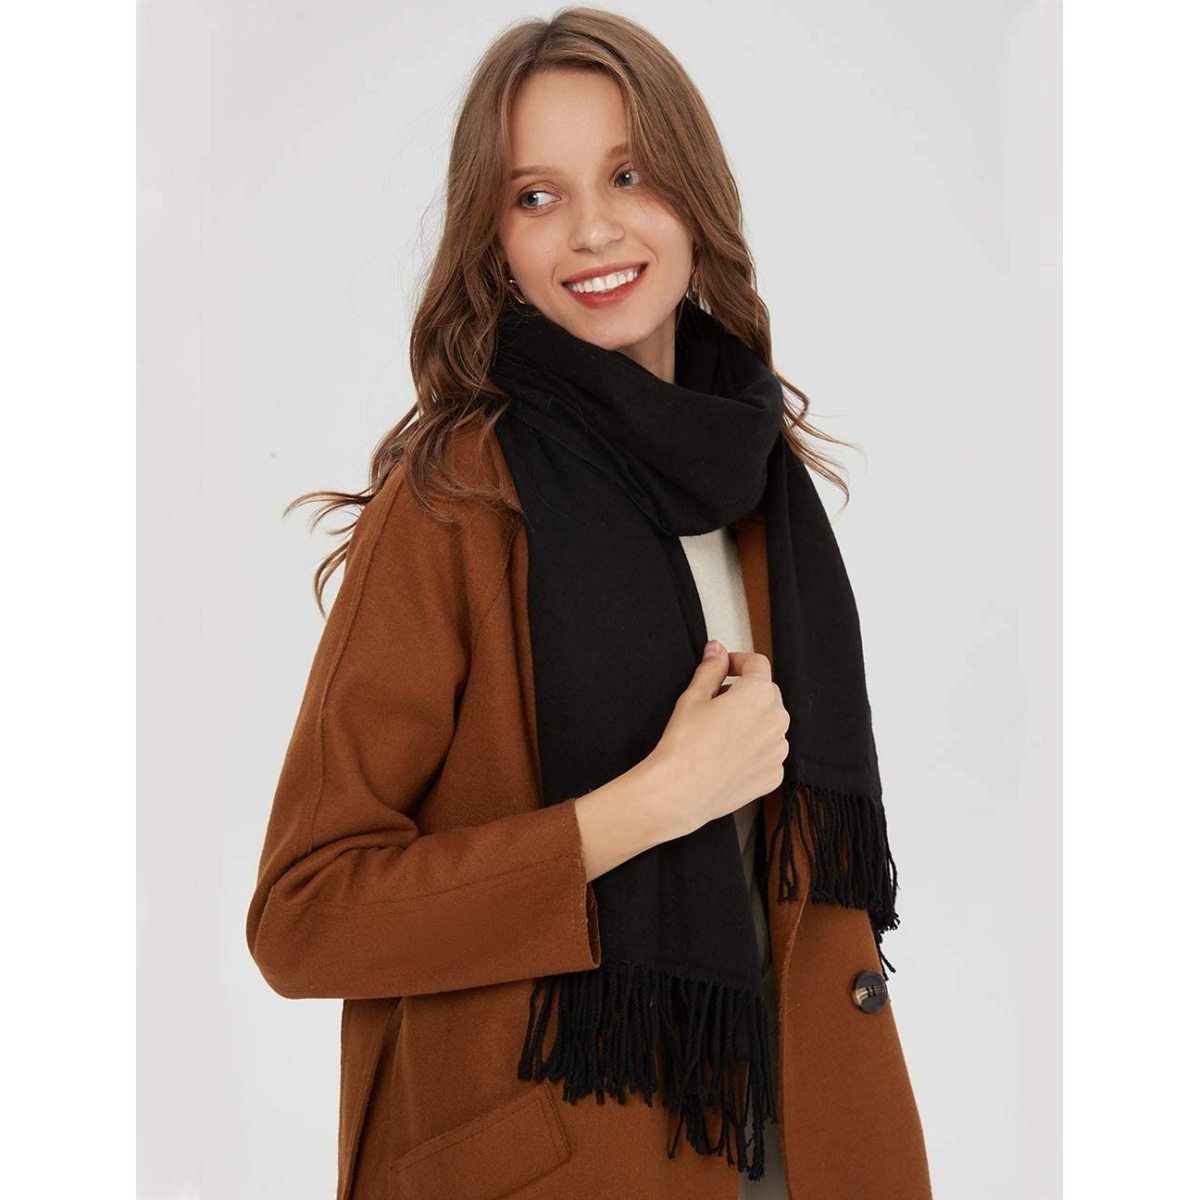 Schwarz Baumwolle Jormftte Winter unifarben Halstuch Herbst Schal Warm mit quasten,Einfarbig